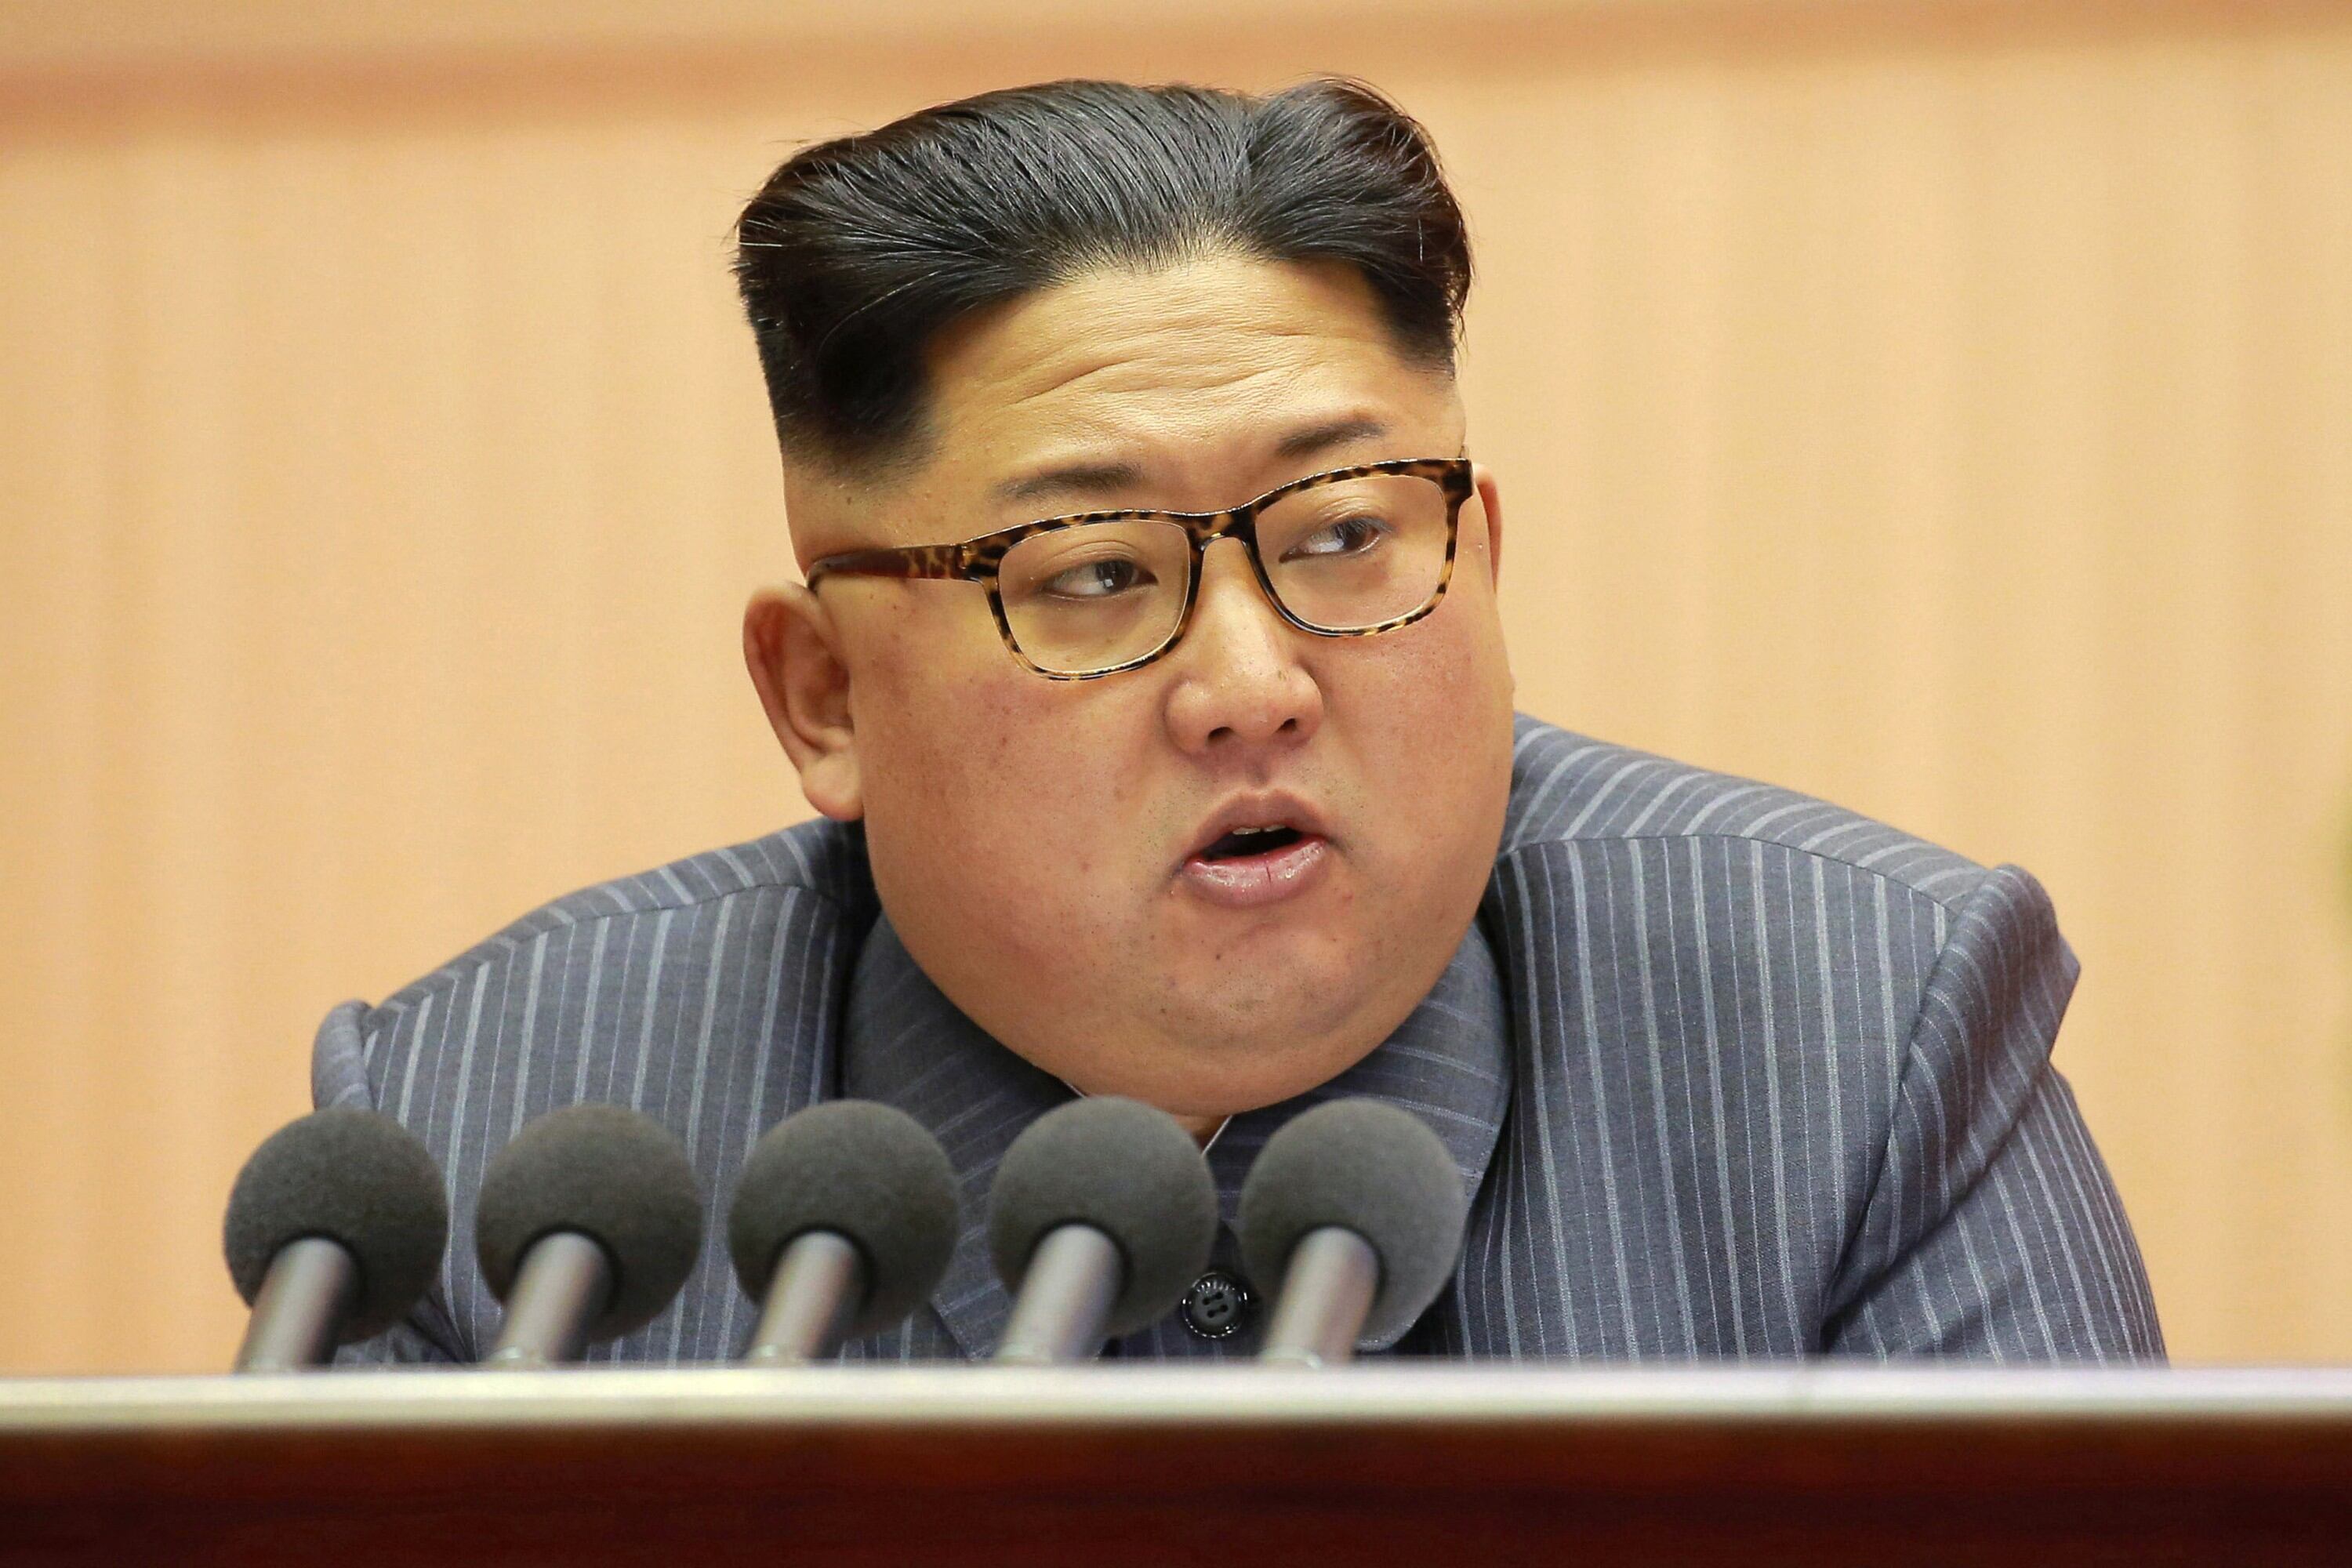 "Las partes están unidas en la opinión de que el proyecto de misiles nucleares norcoreano viola las demandas del Consejo de Seguridad de la ONU", indican representantes de Estados Unidos y Rusia.